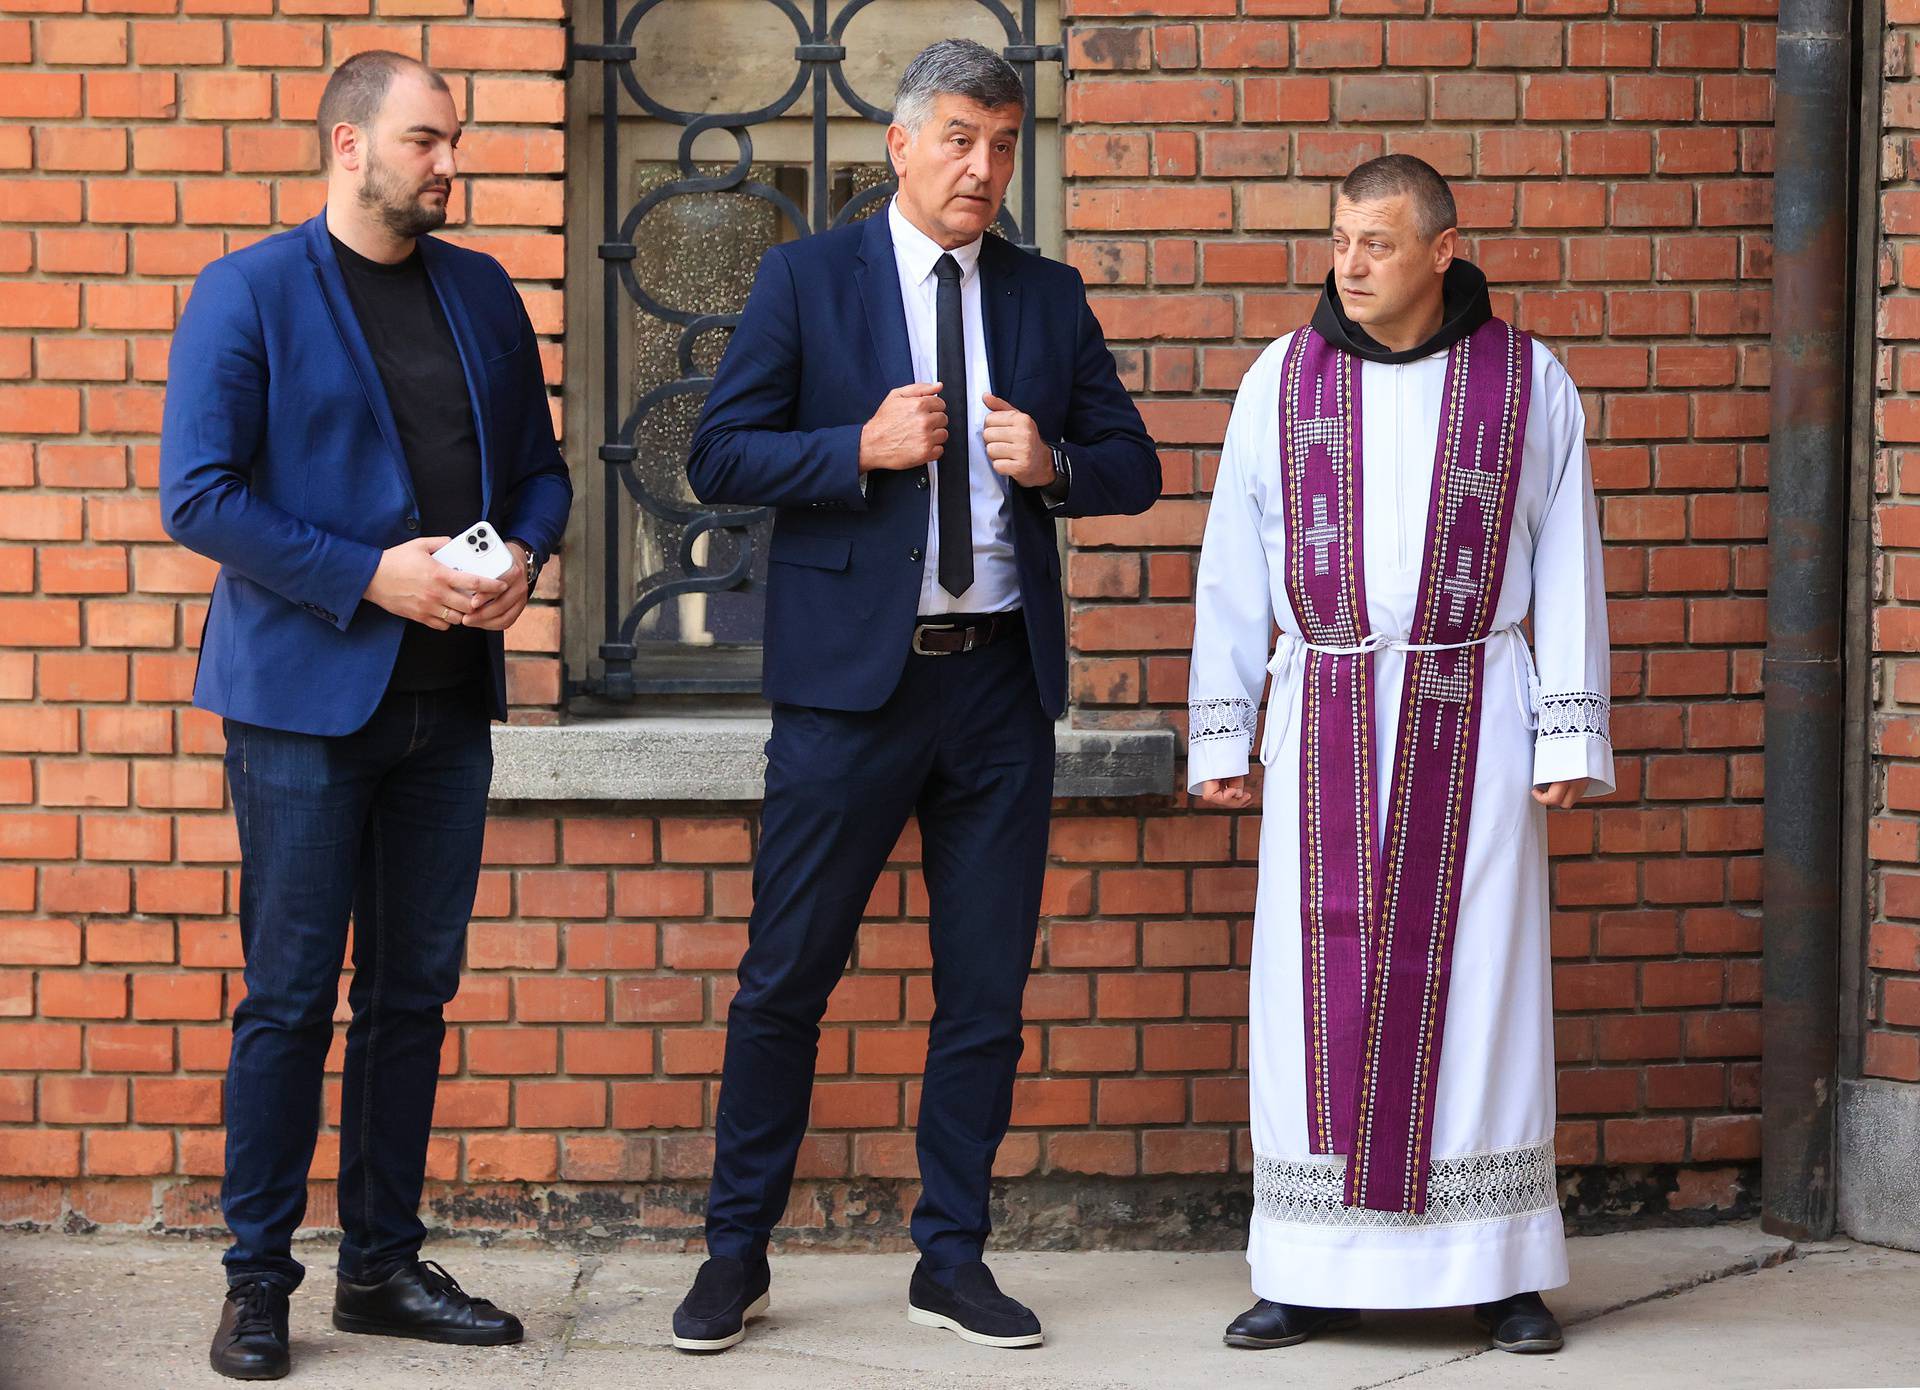 Beograd: Otac Mateja Periša, Nenad Periš i nadbiskup Hočevar dali izjavu za medije